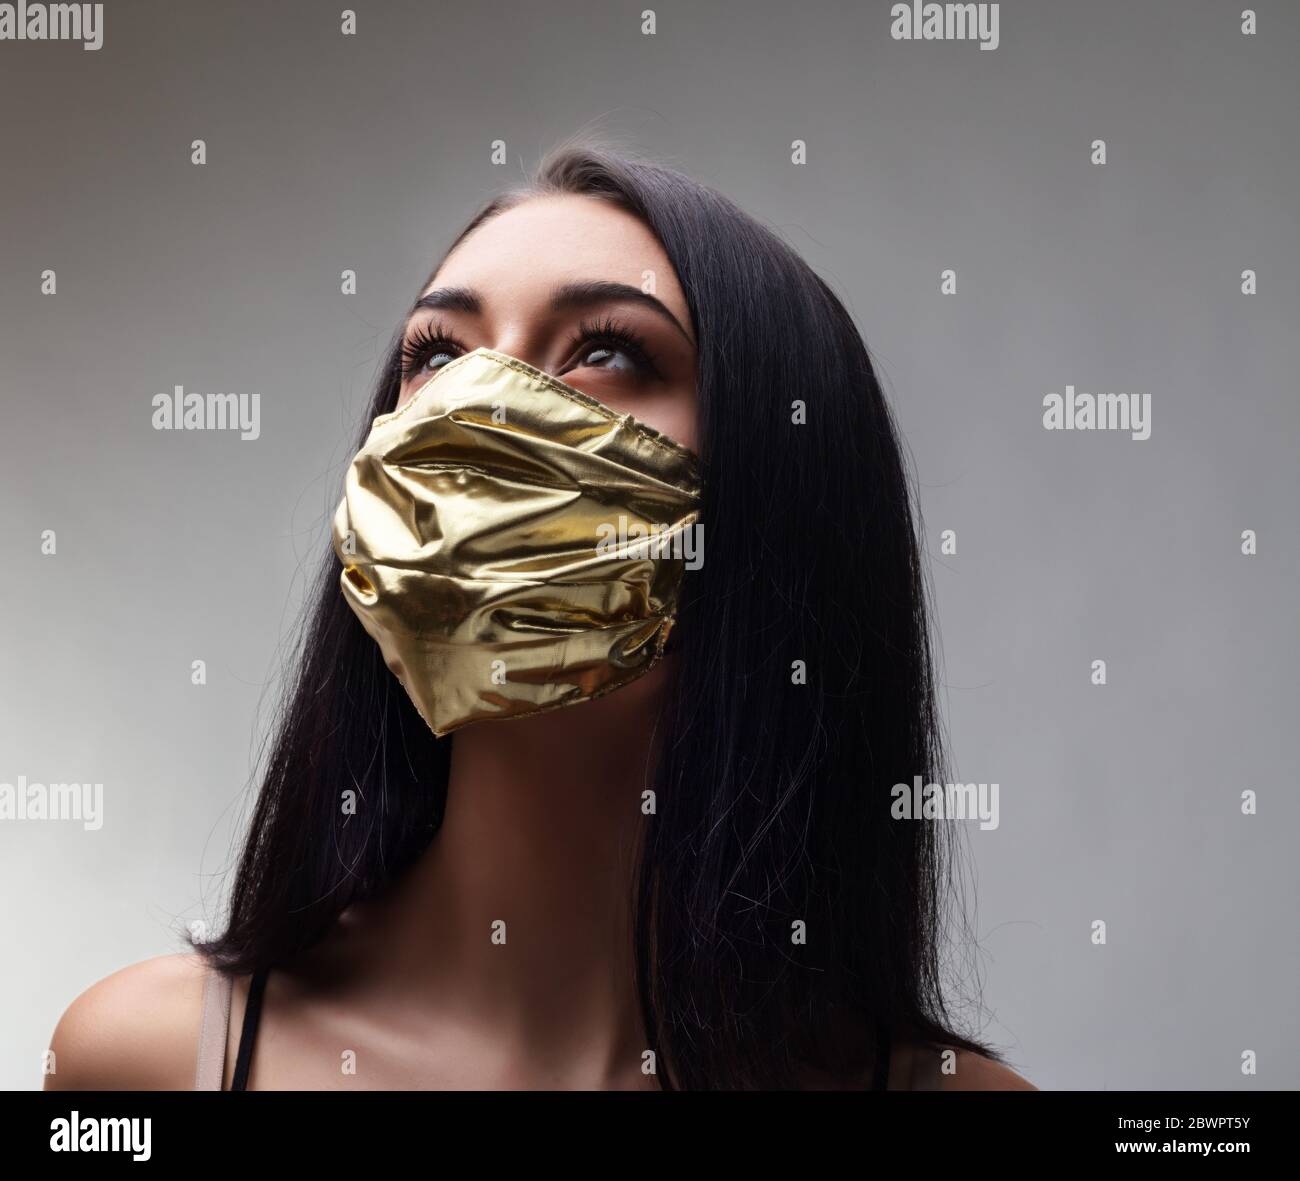 Frau trägt eine goldene Gesichtsmaske - Konzept der chirurgischen Masken Preis steigen, wenn sie obligatorisch sind und so extrem selten, wie sie benötigt werden, um t zu mildern Stockfoto